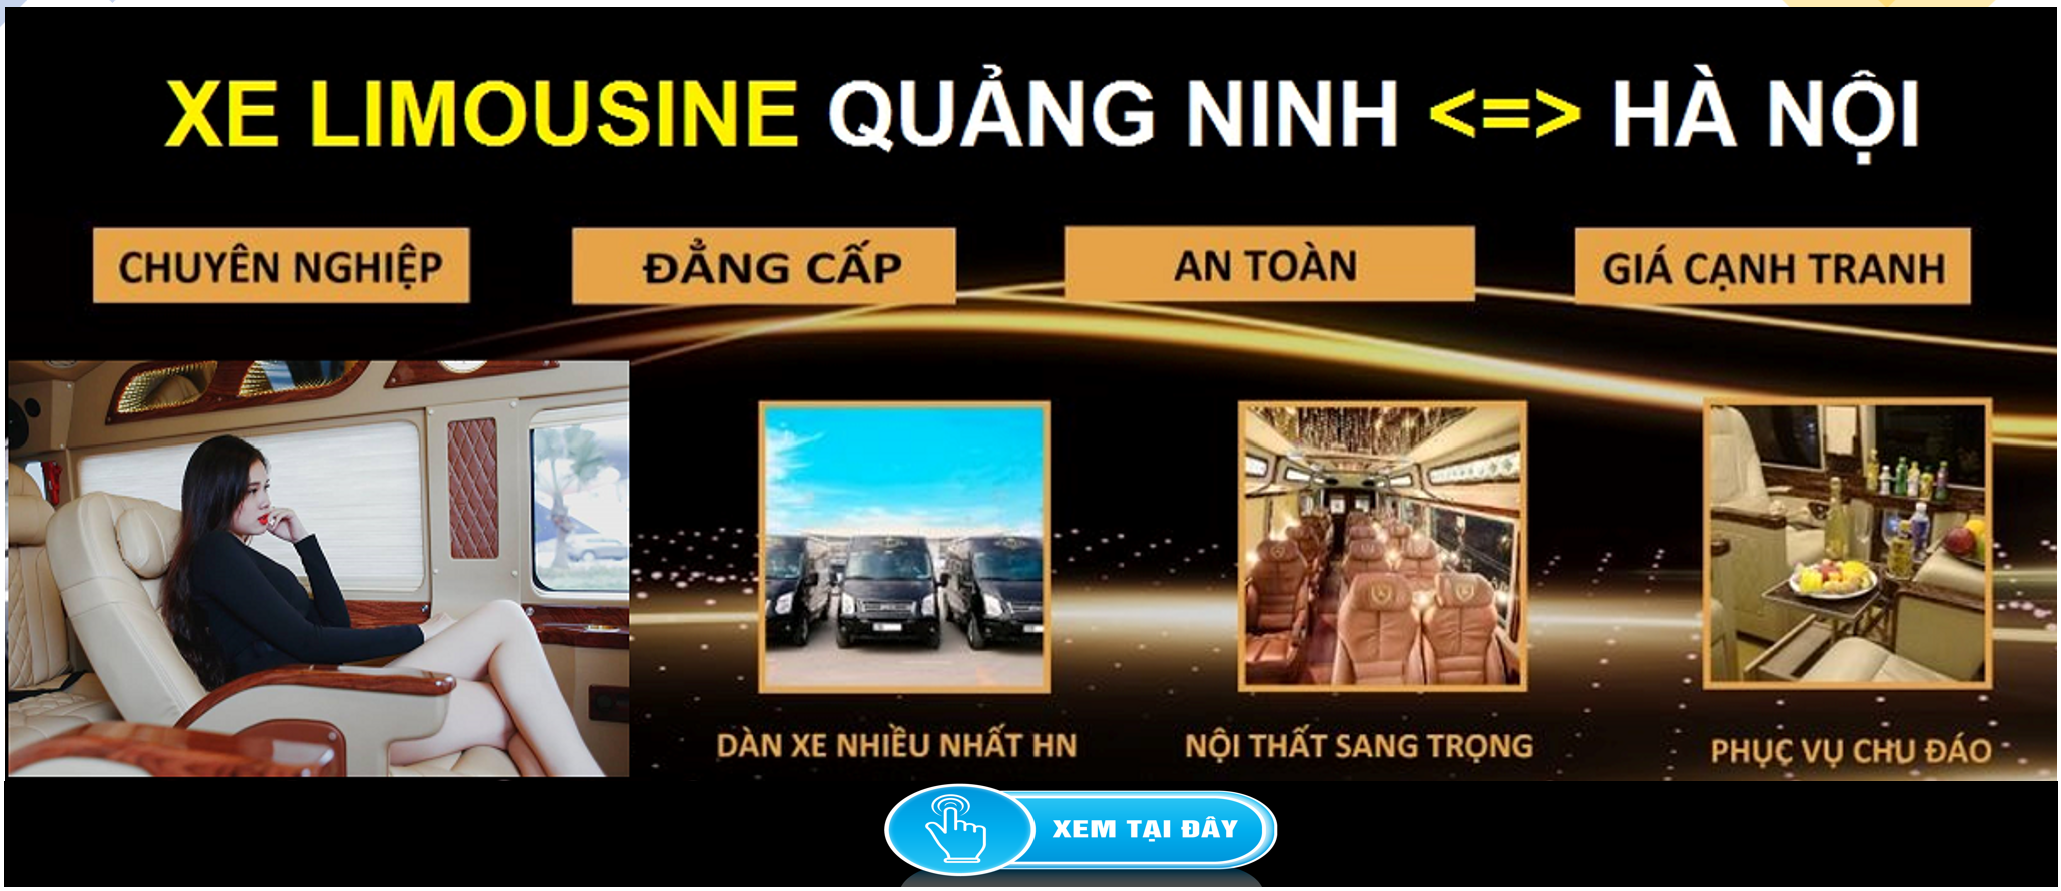 Xe Limousine Ha Noi Quang Ninh dua don tai nha 1d - Giá xe Trang chủ